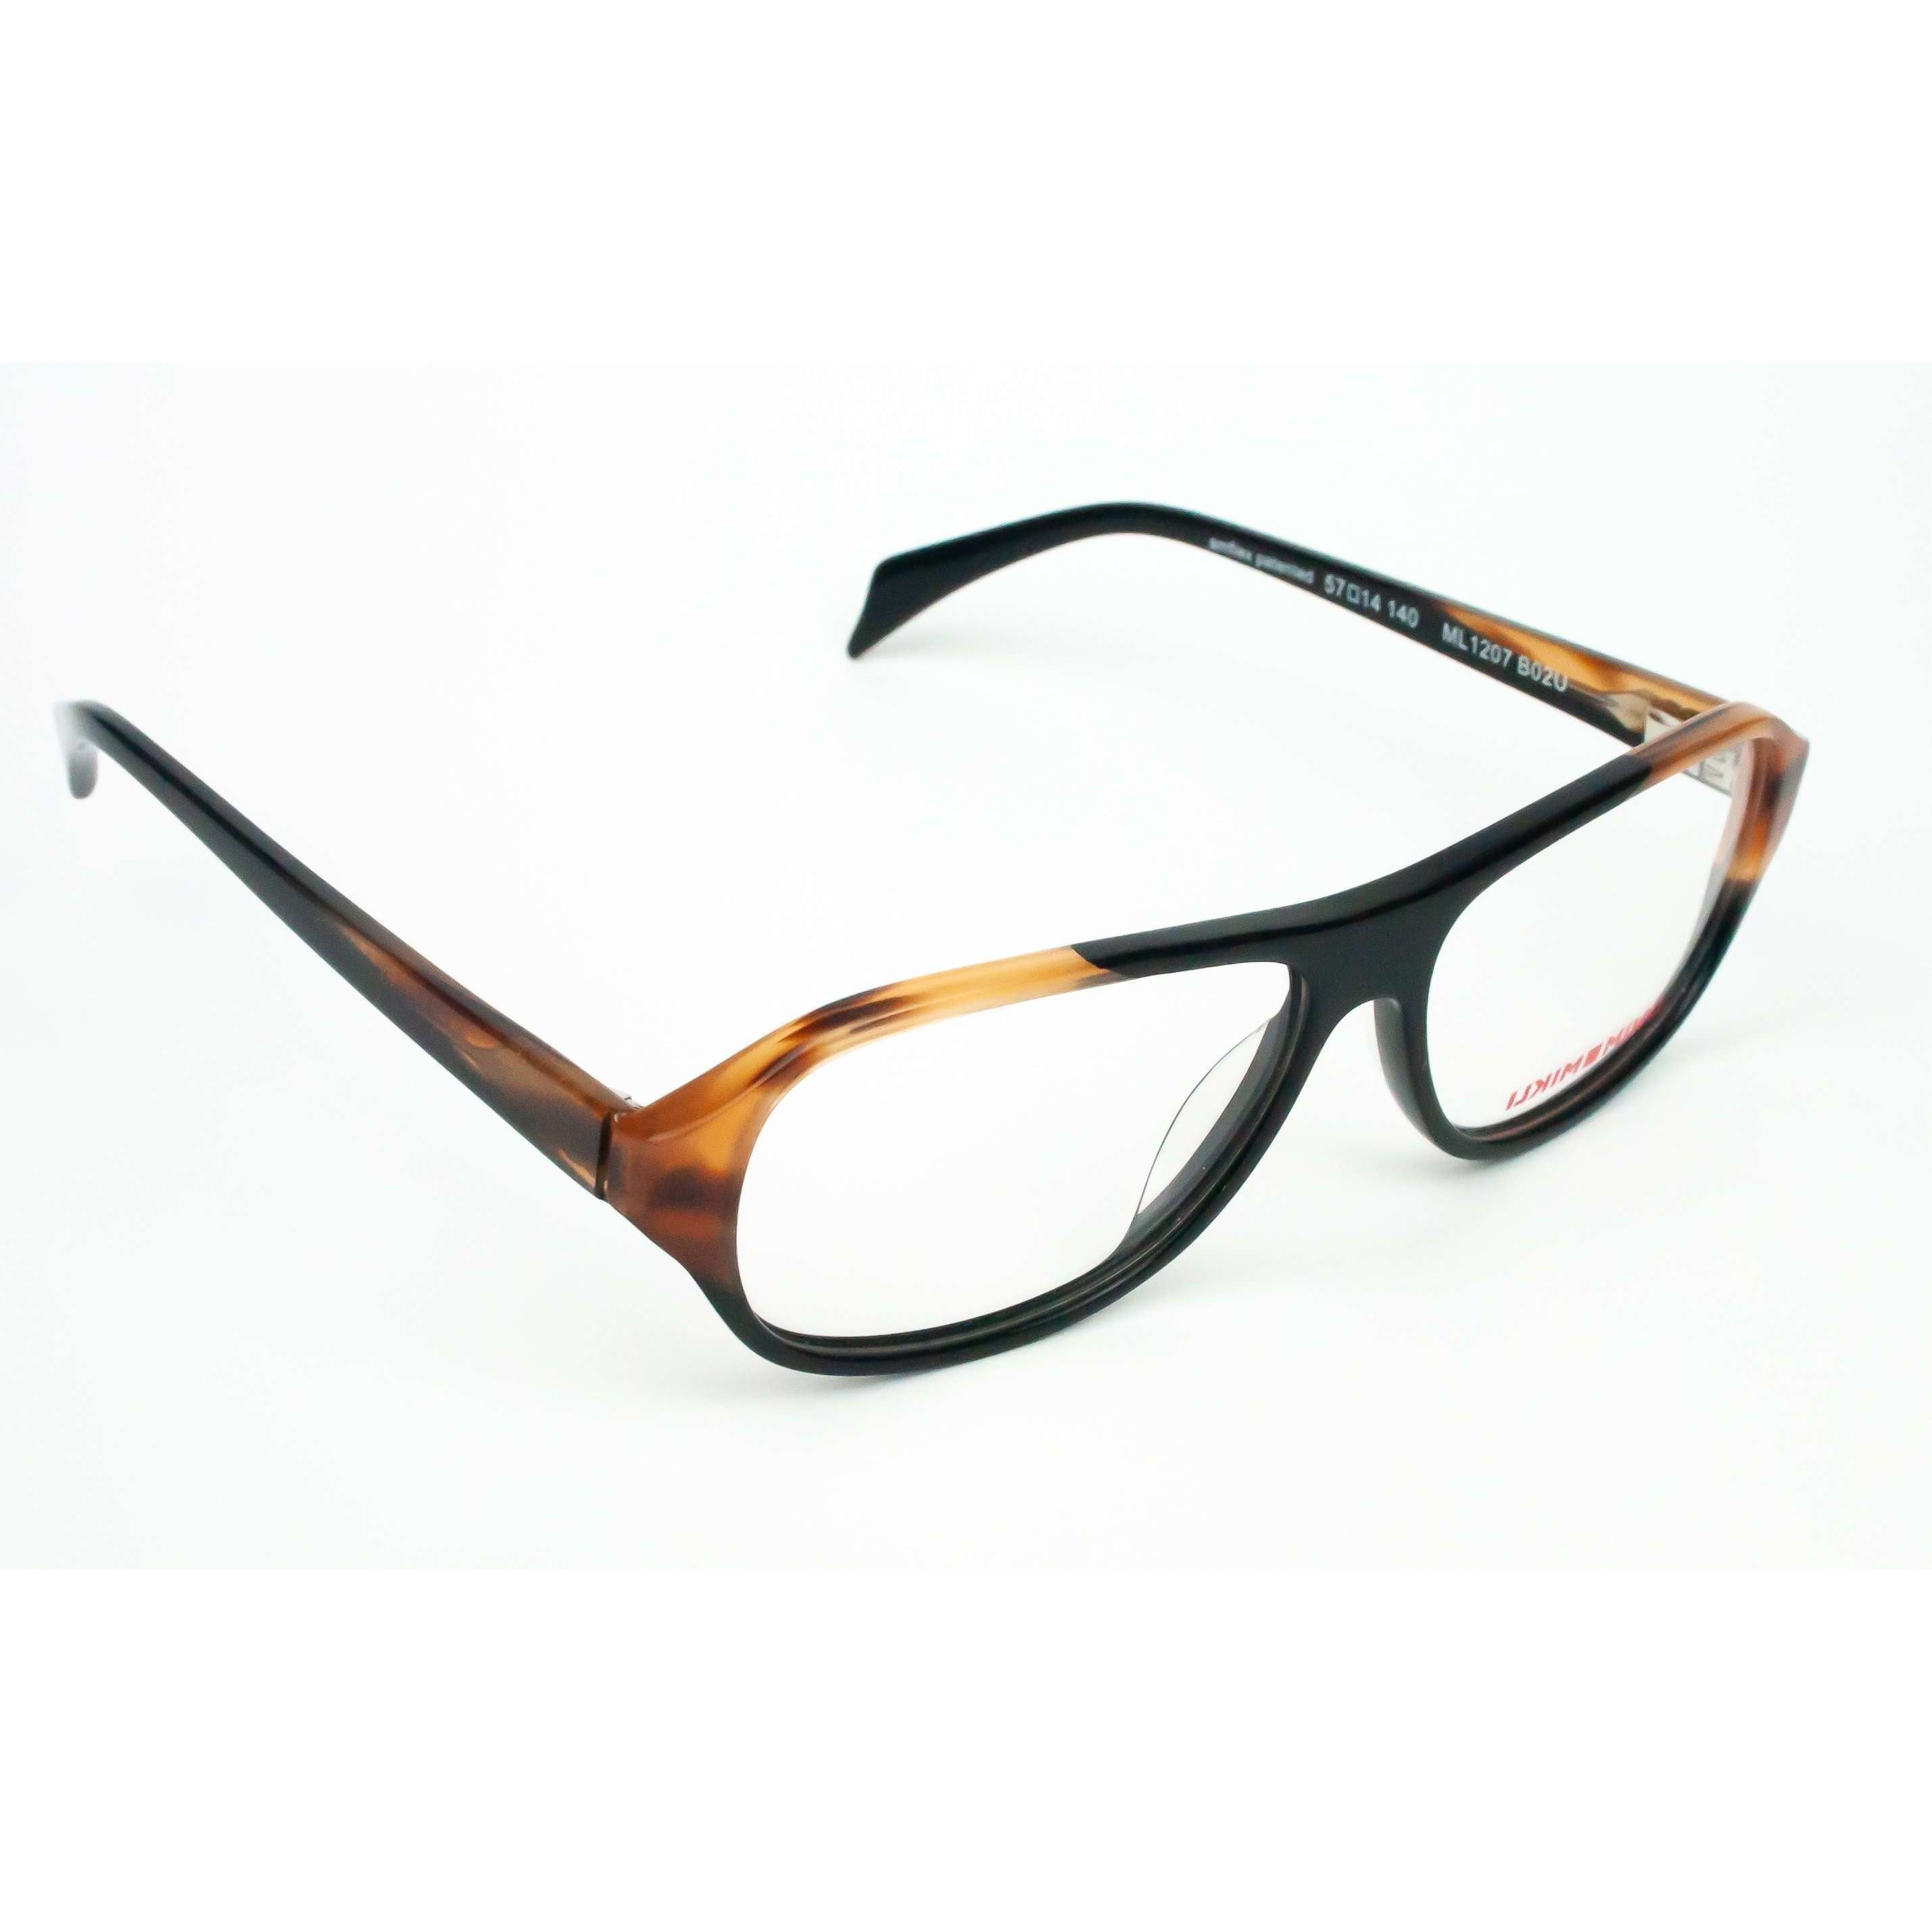 Alain Mikli Model ML1207 Black glasses frames